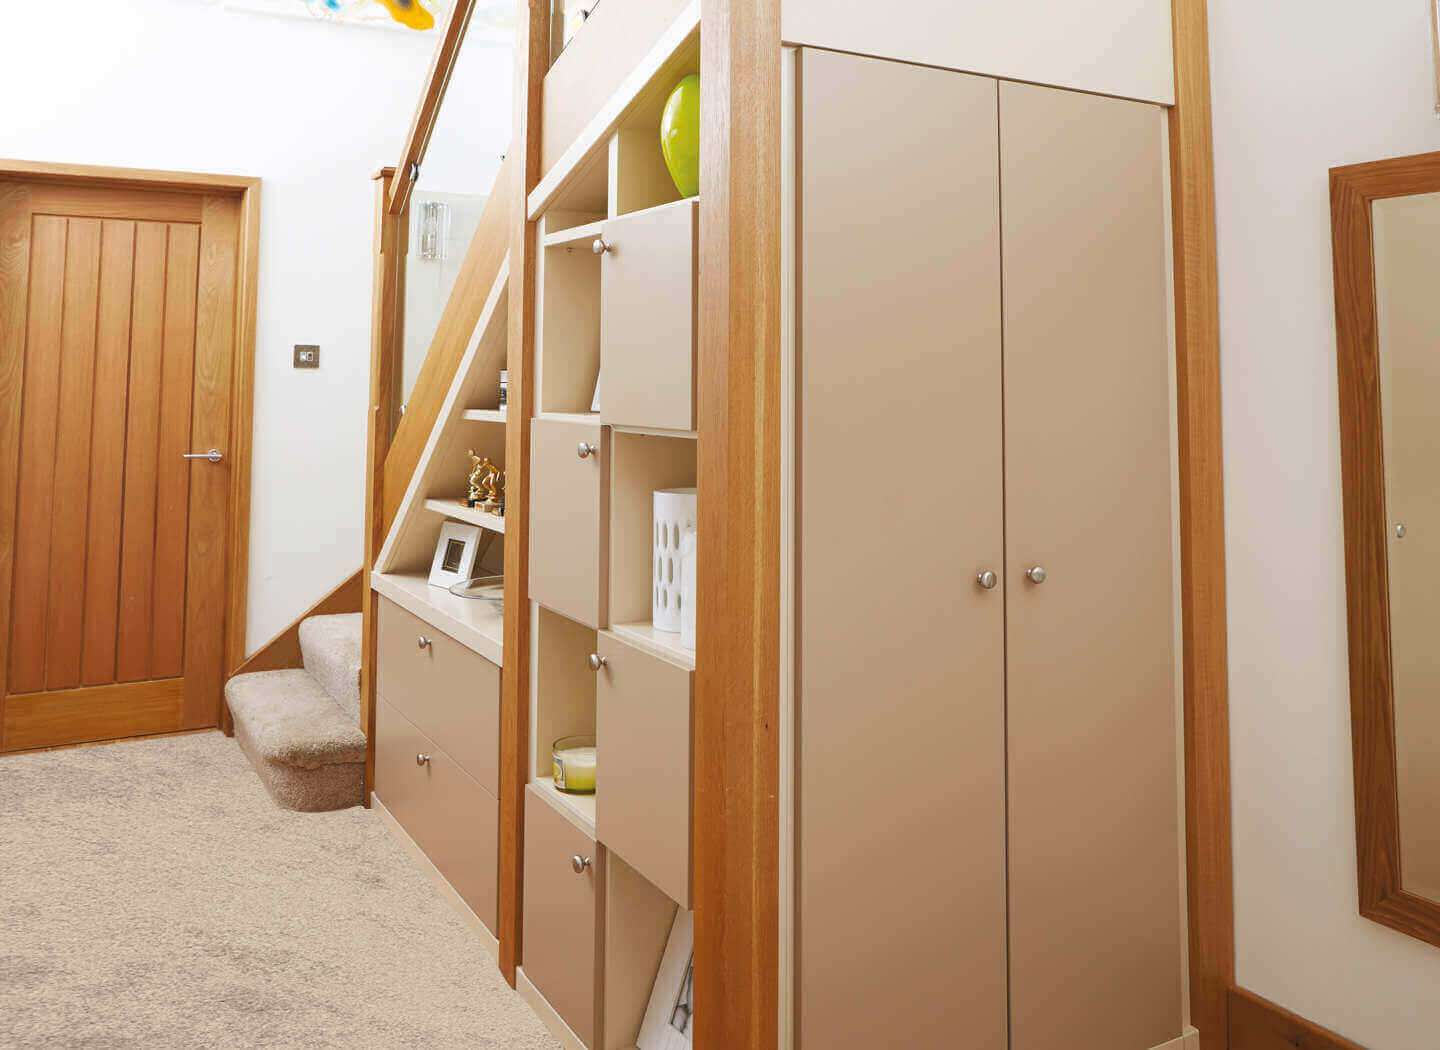 Strachan Furniture Under Stairs & Hallway Storage